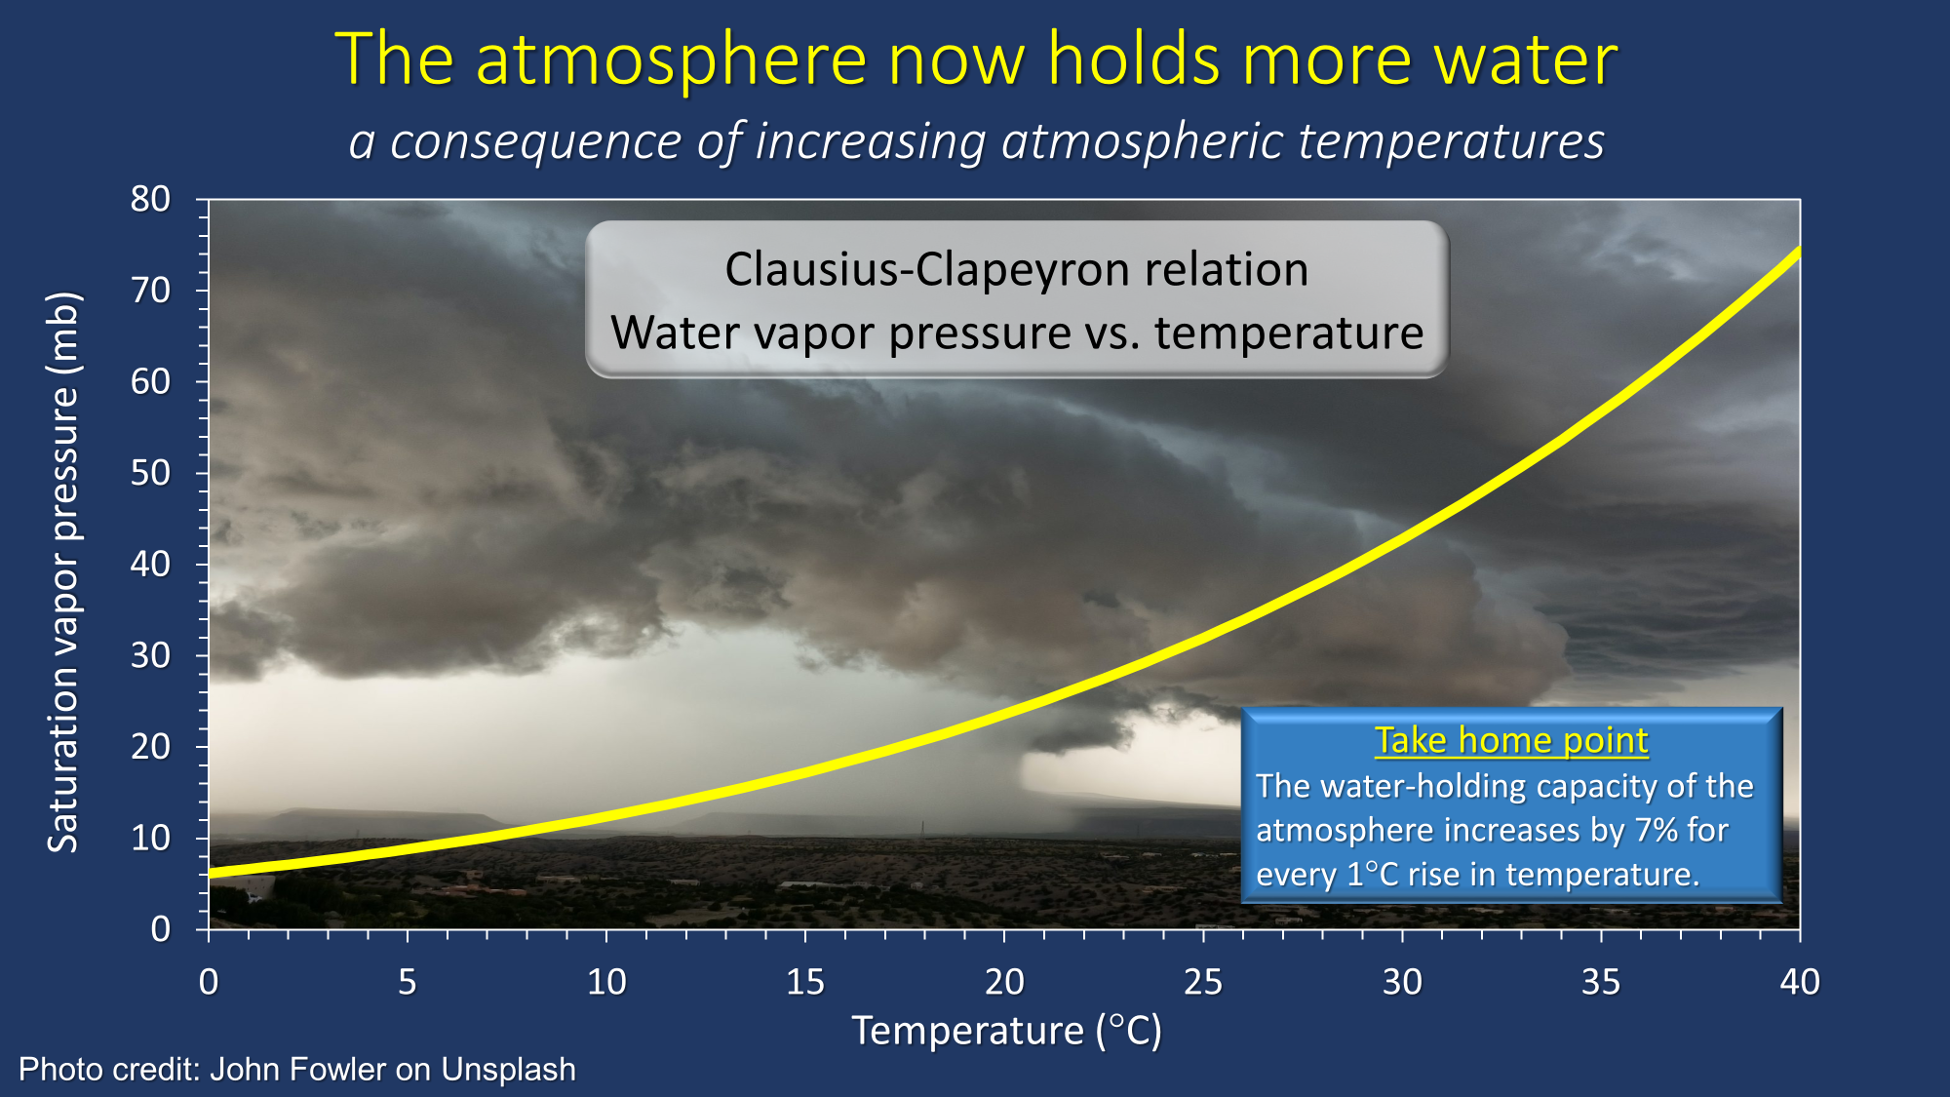 Clausius-Clapeyron relation: Water vapor pressure vs. temperature